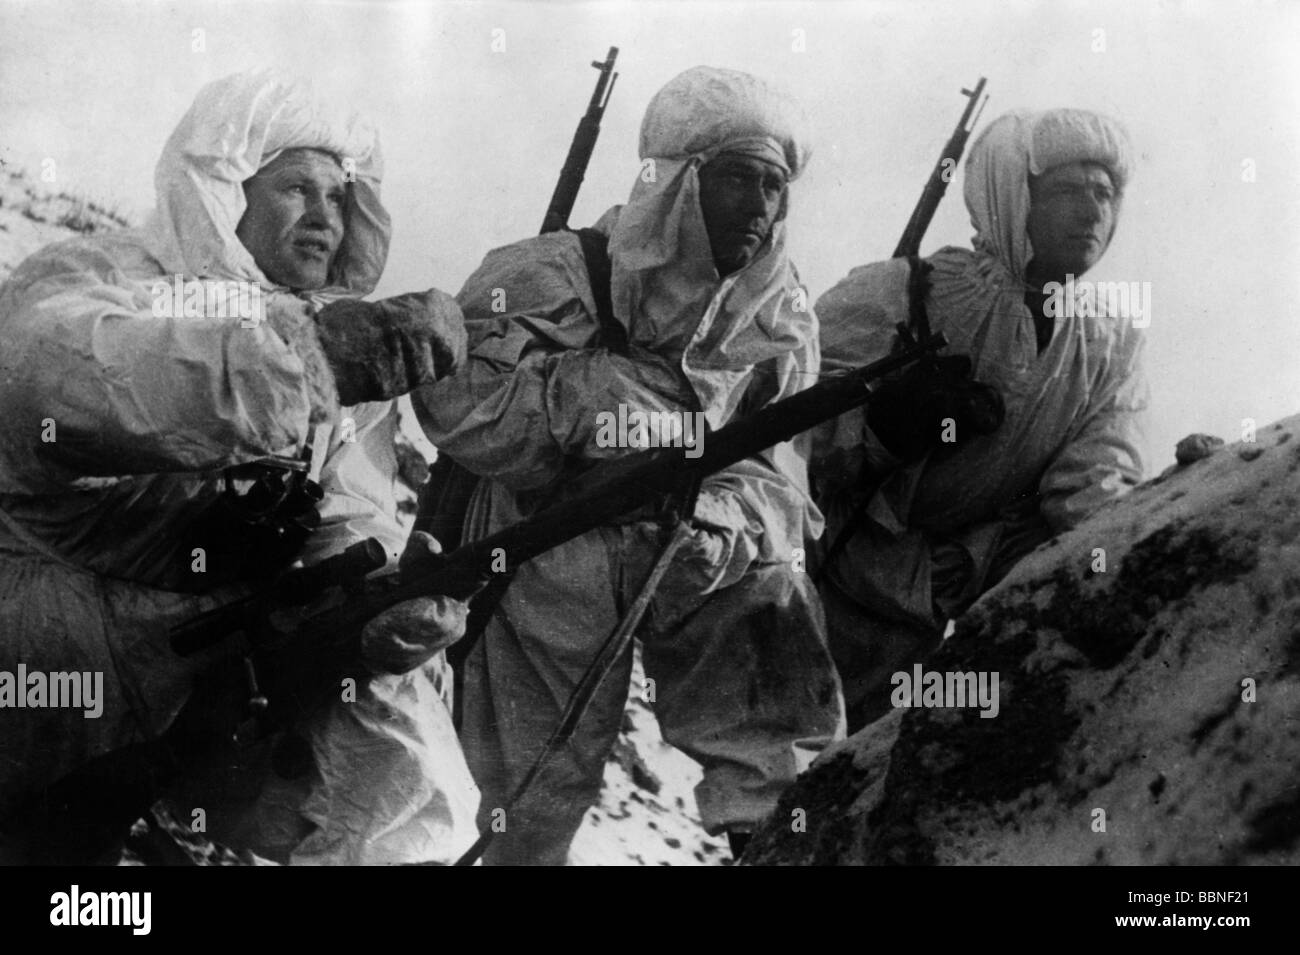 Ereignisse, Zweiter Weltkrieg/zweiter Weltkrieg, Russland, Stalingrad 1942/1943, sowjetischen Scharfschützen in Wintertarnanzügen, darunter Wassili Zaytsev (links), später "Held der Sowjetunion", Stockfoto